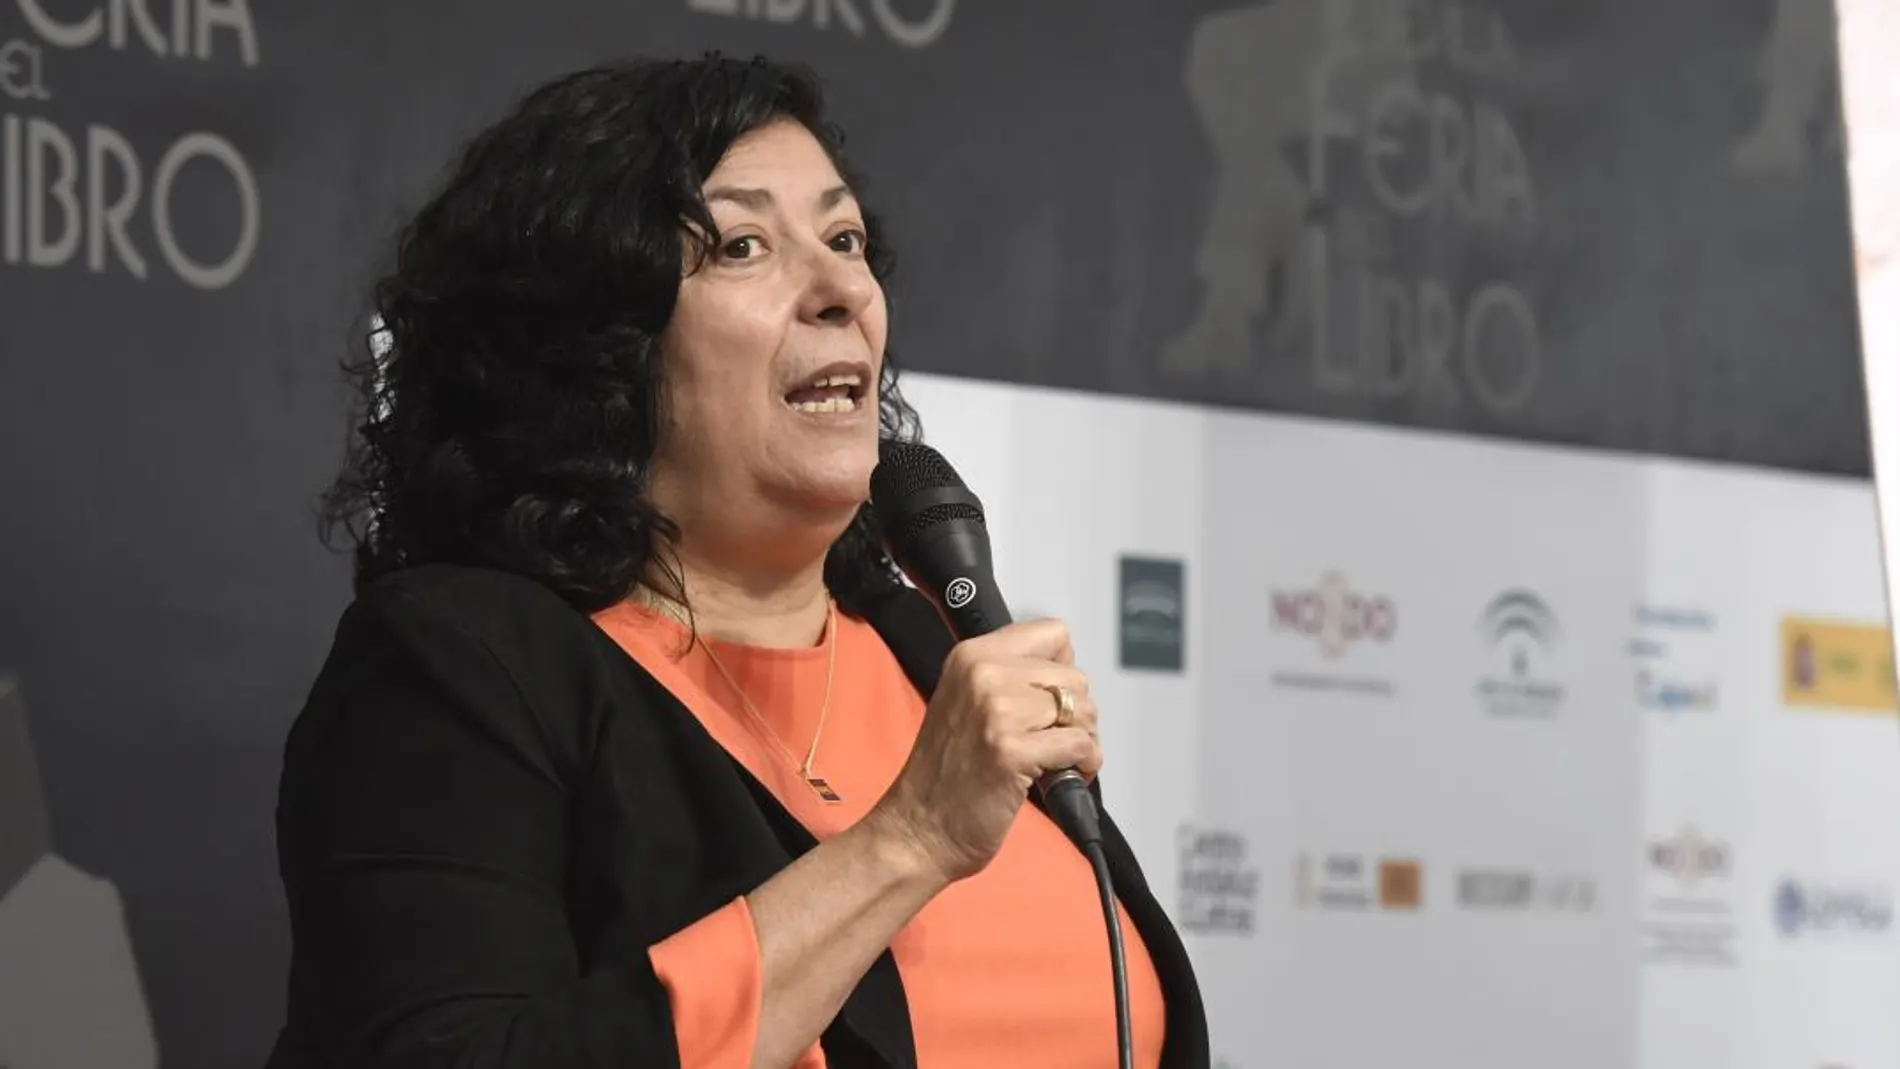 La conferencia inaugural de la Feria del Libro de Sevilla corrió a cargo de Almudena Grandes